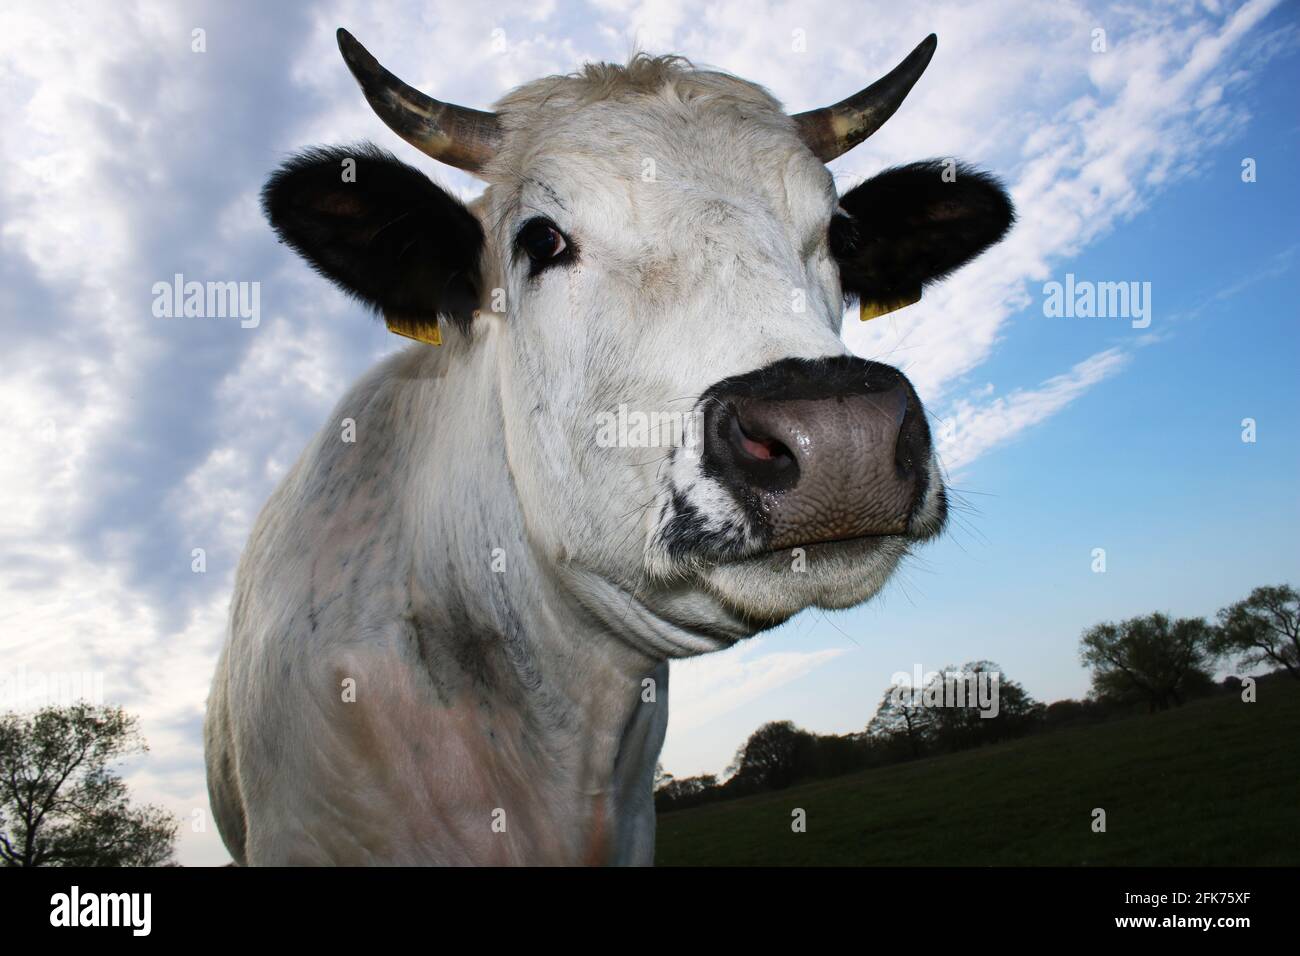 Portrait einer Kuh, Protrait of a cow Stock Photo